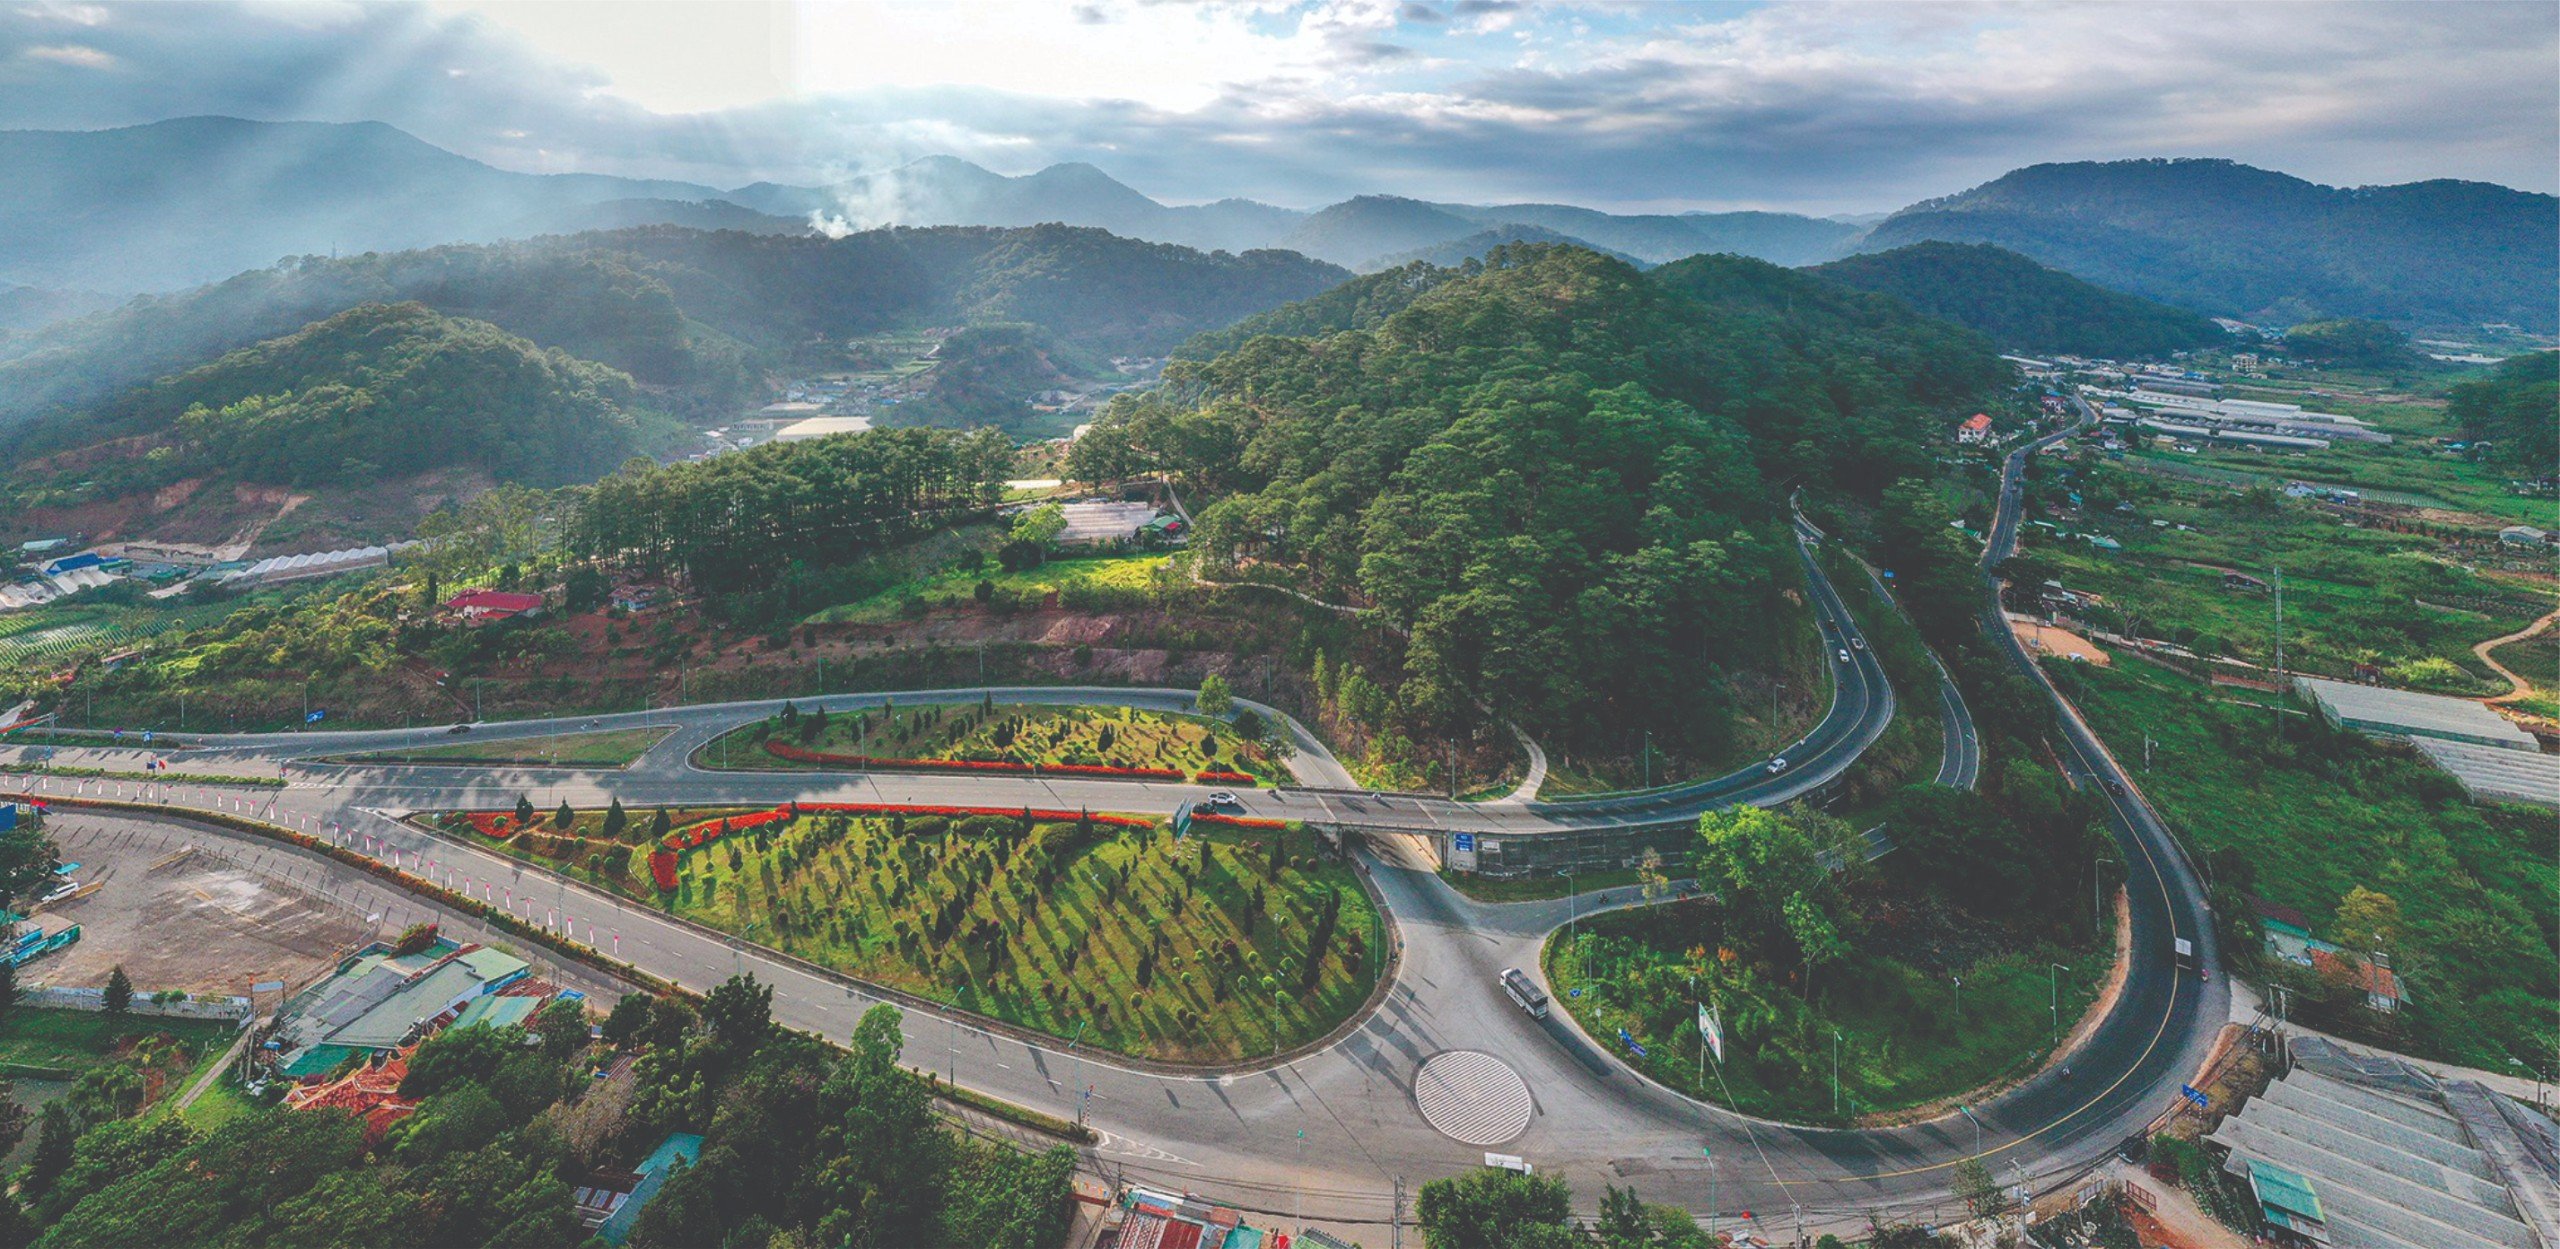 Quyết định Phê duyệt Quy hoạch tỉnh Lâm Đồng thời kỳ 2021 - 2030, tầm nhìn đến năm 2050